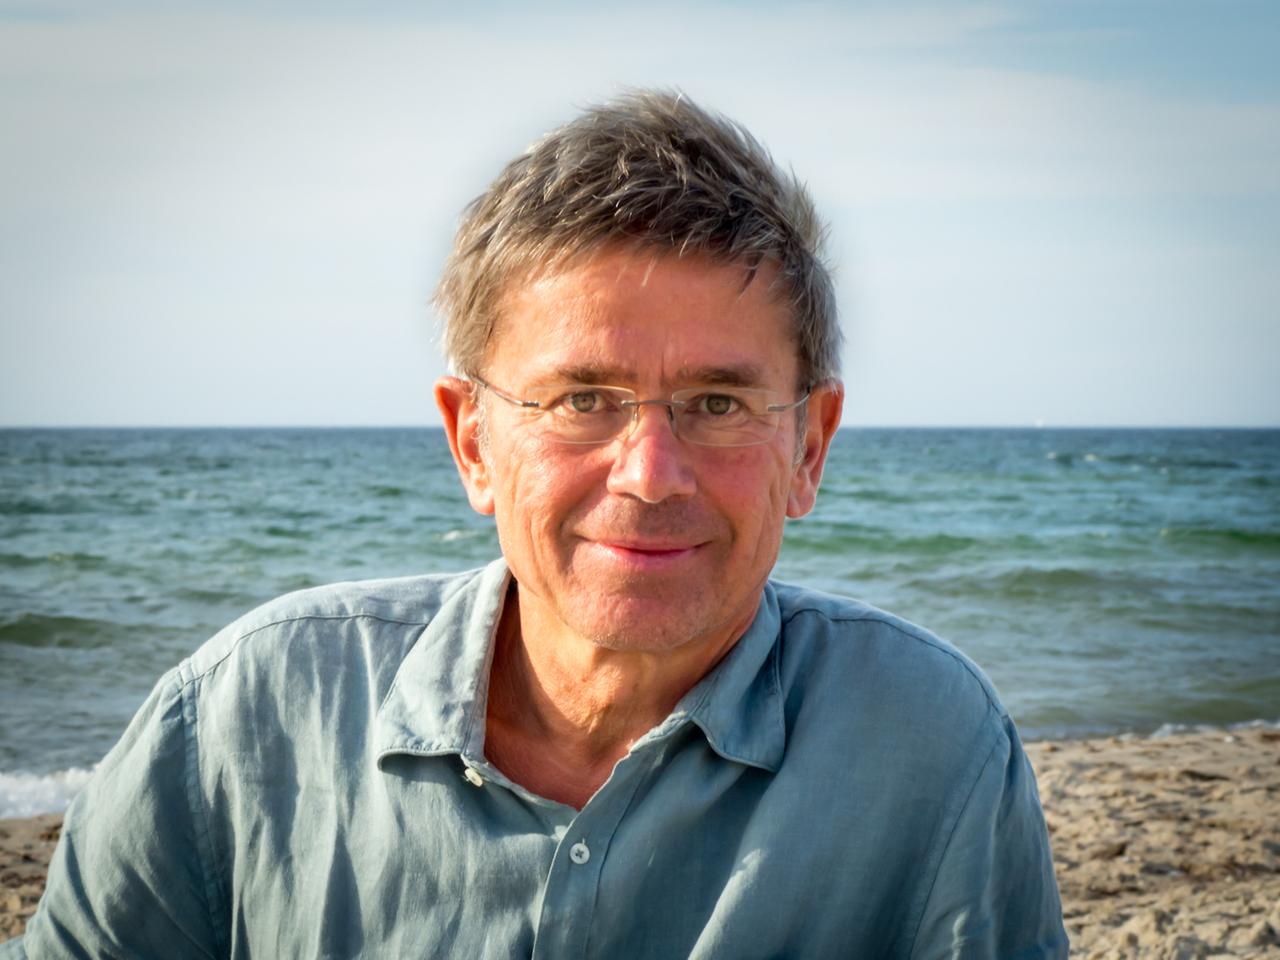 Porträt von Stefan Rahmstorf. Ein mittelalter Mann mit randloser Brille und im blauen Hemd schaut direkt in die Kamera. Hinter ihm ist das Meer zu sehen.